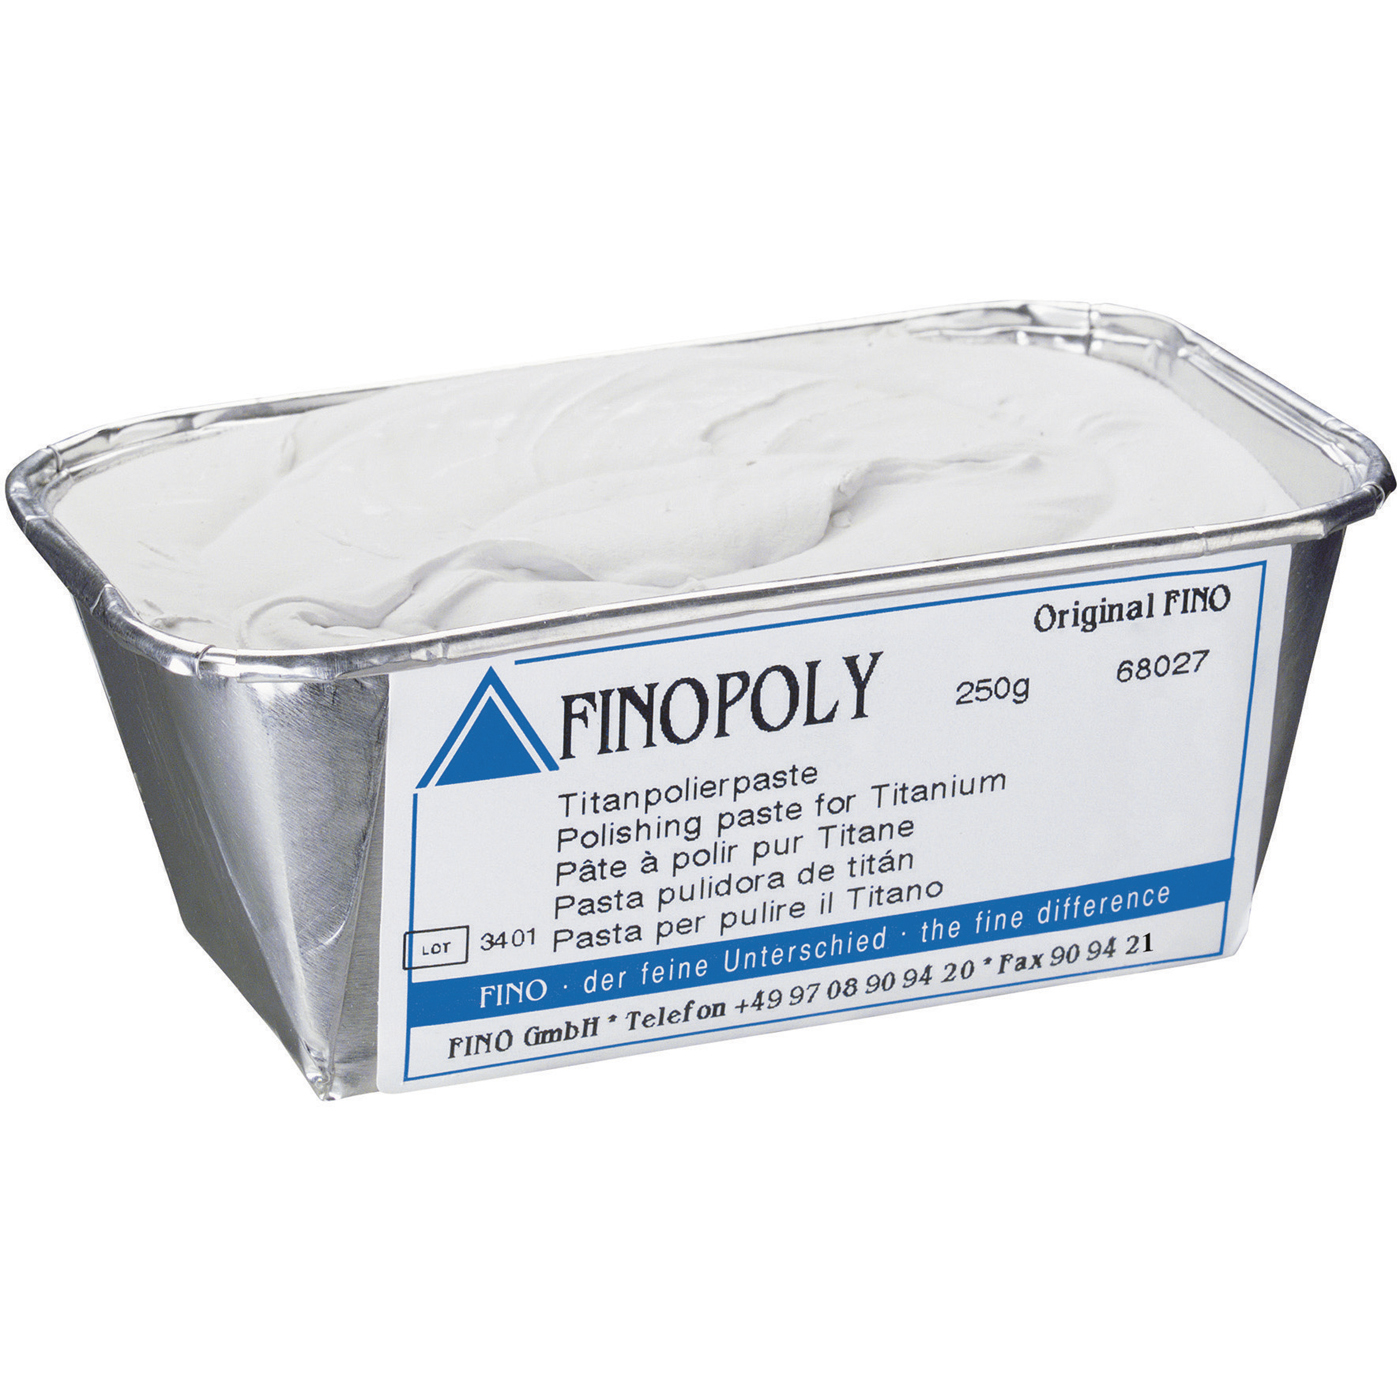 FINOPOLY Titanium Polishing Paste, White - 250 g